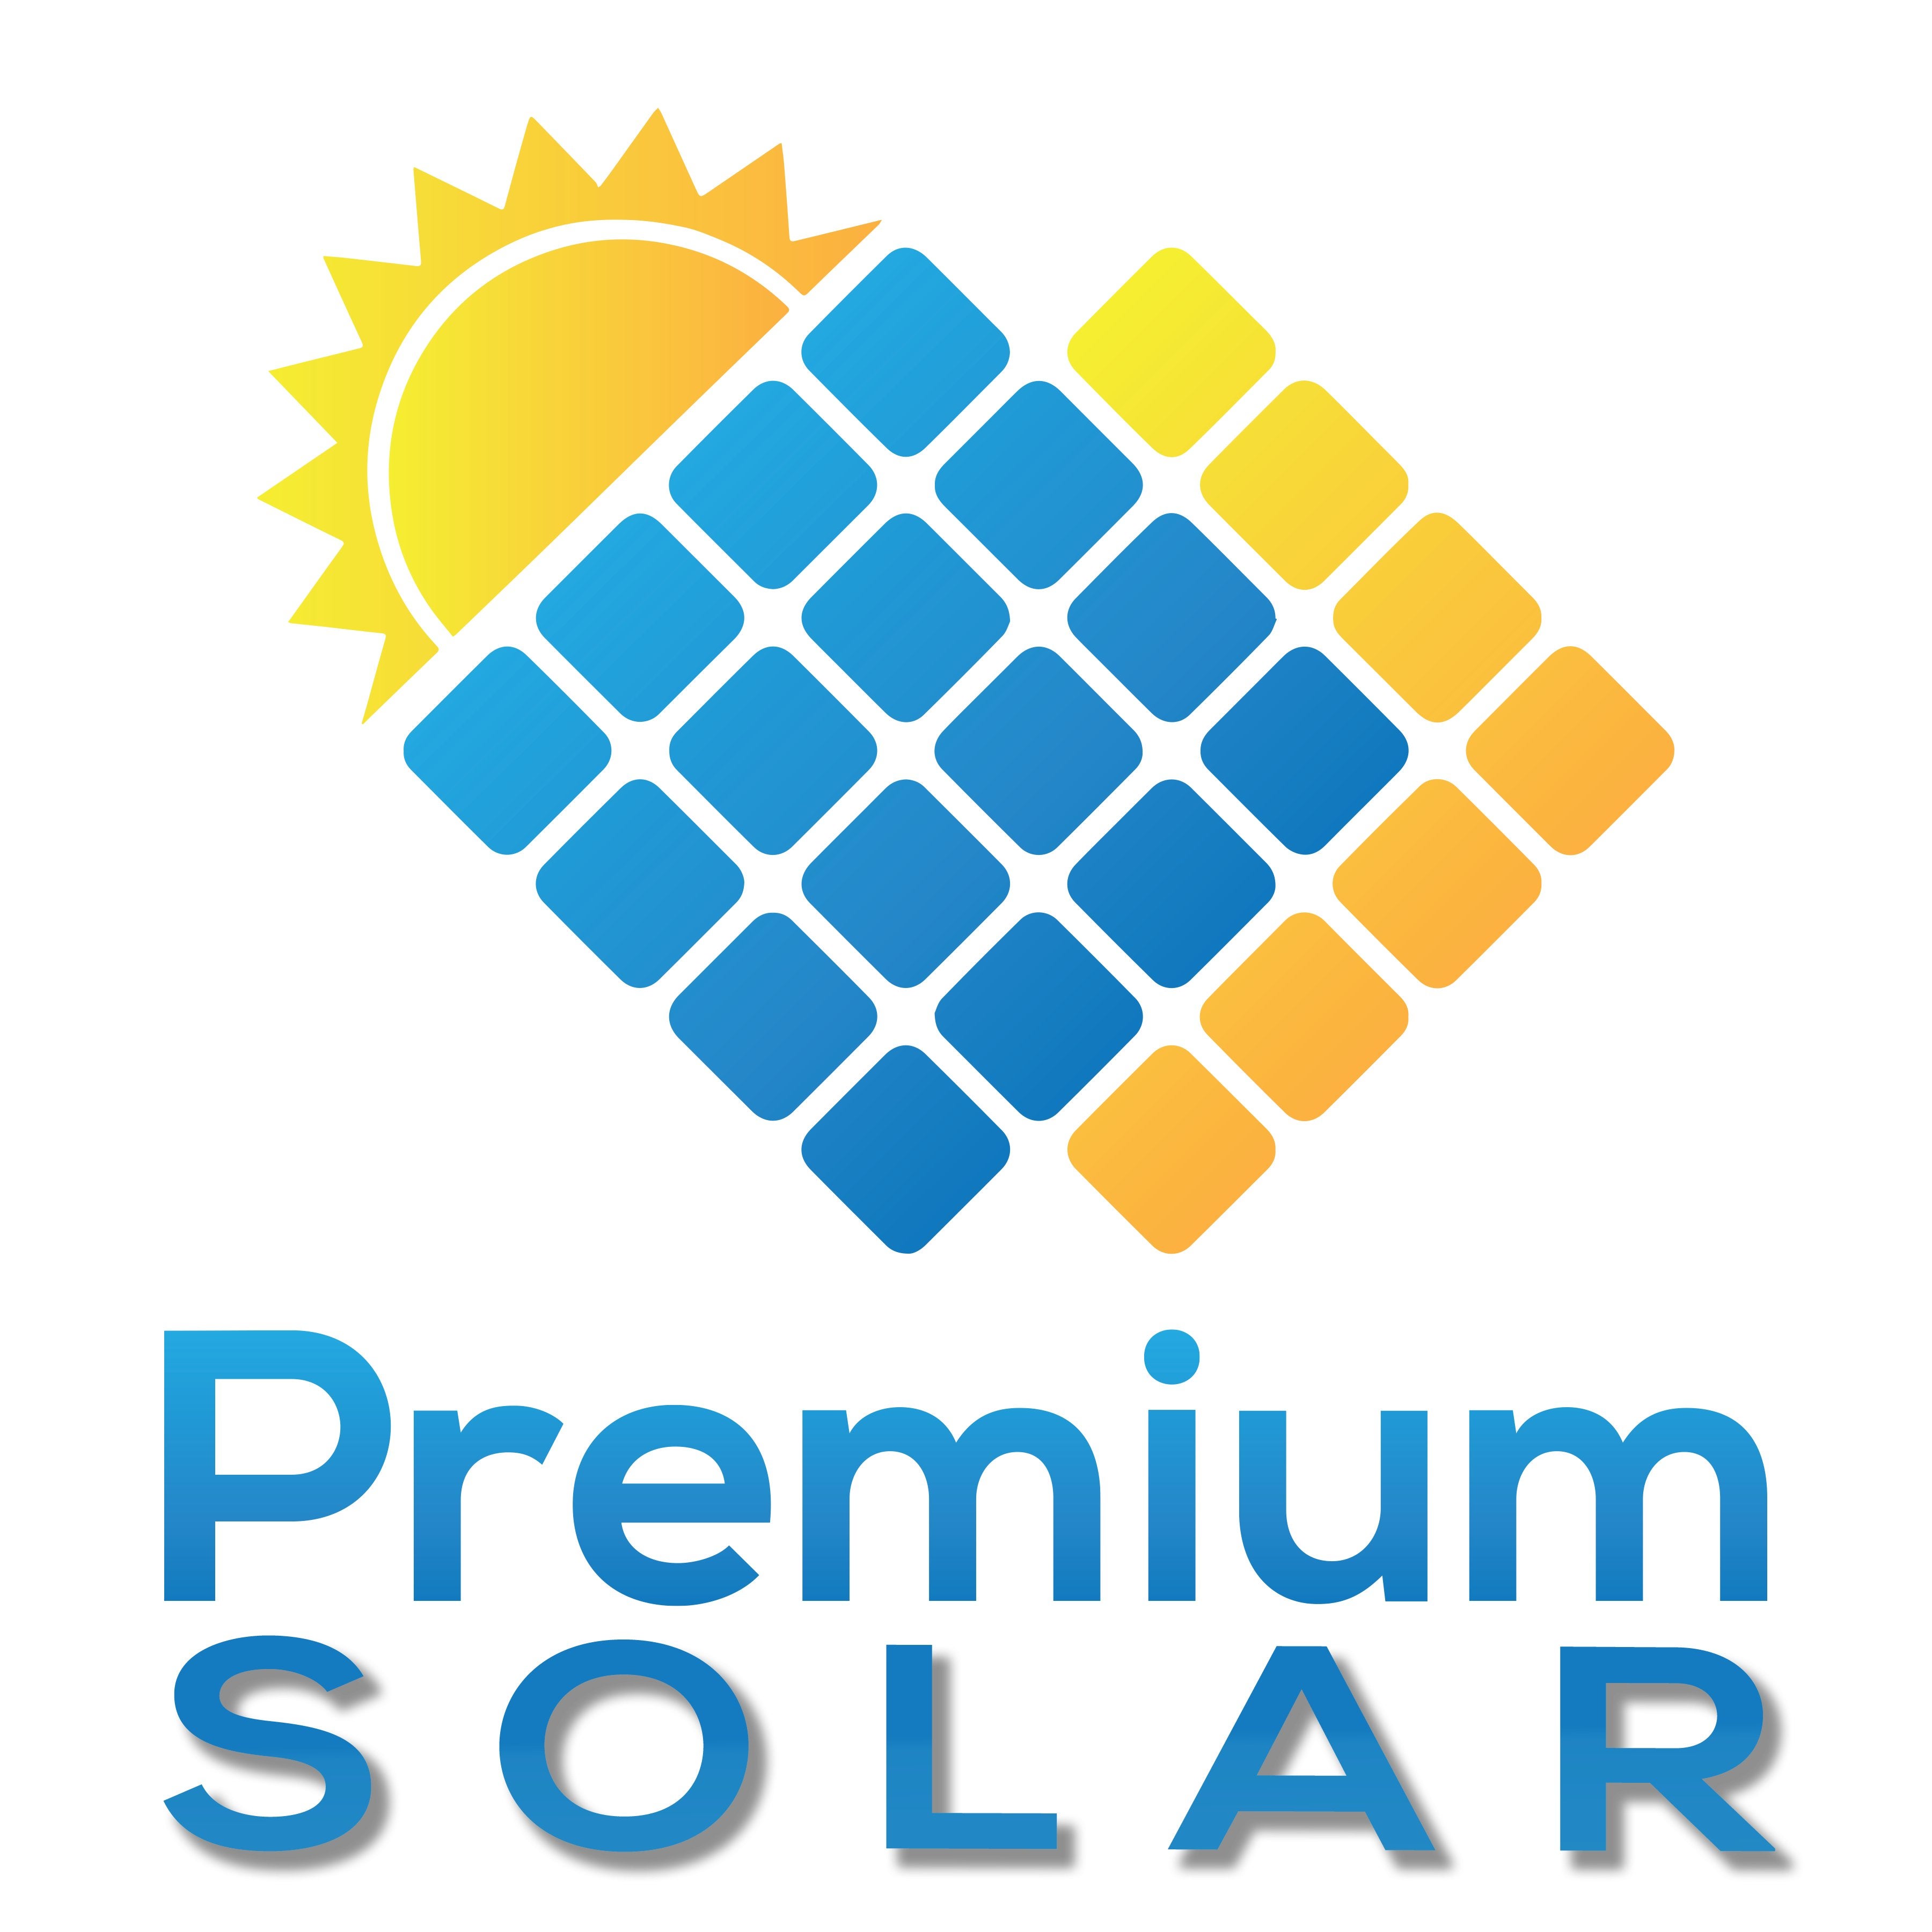 Premium Solar Patios logo